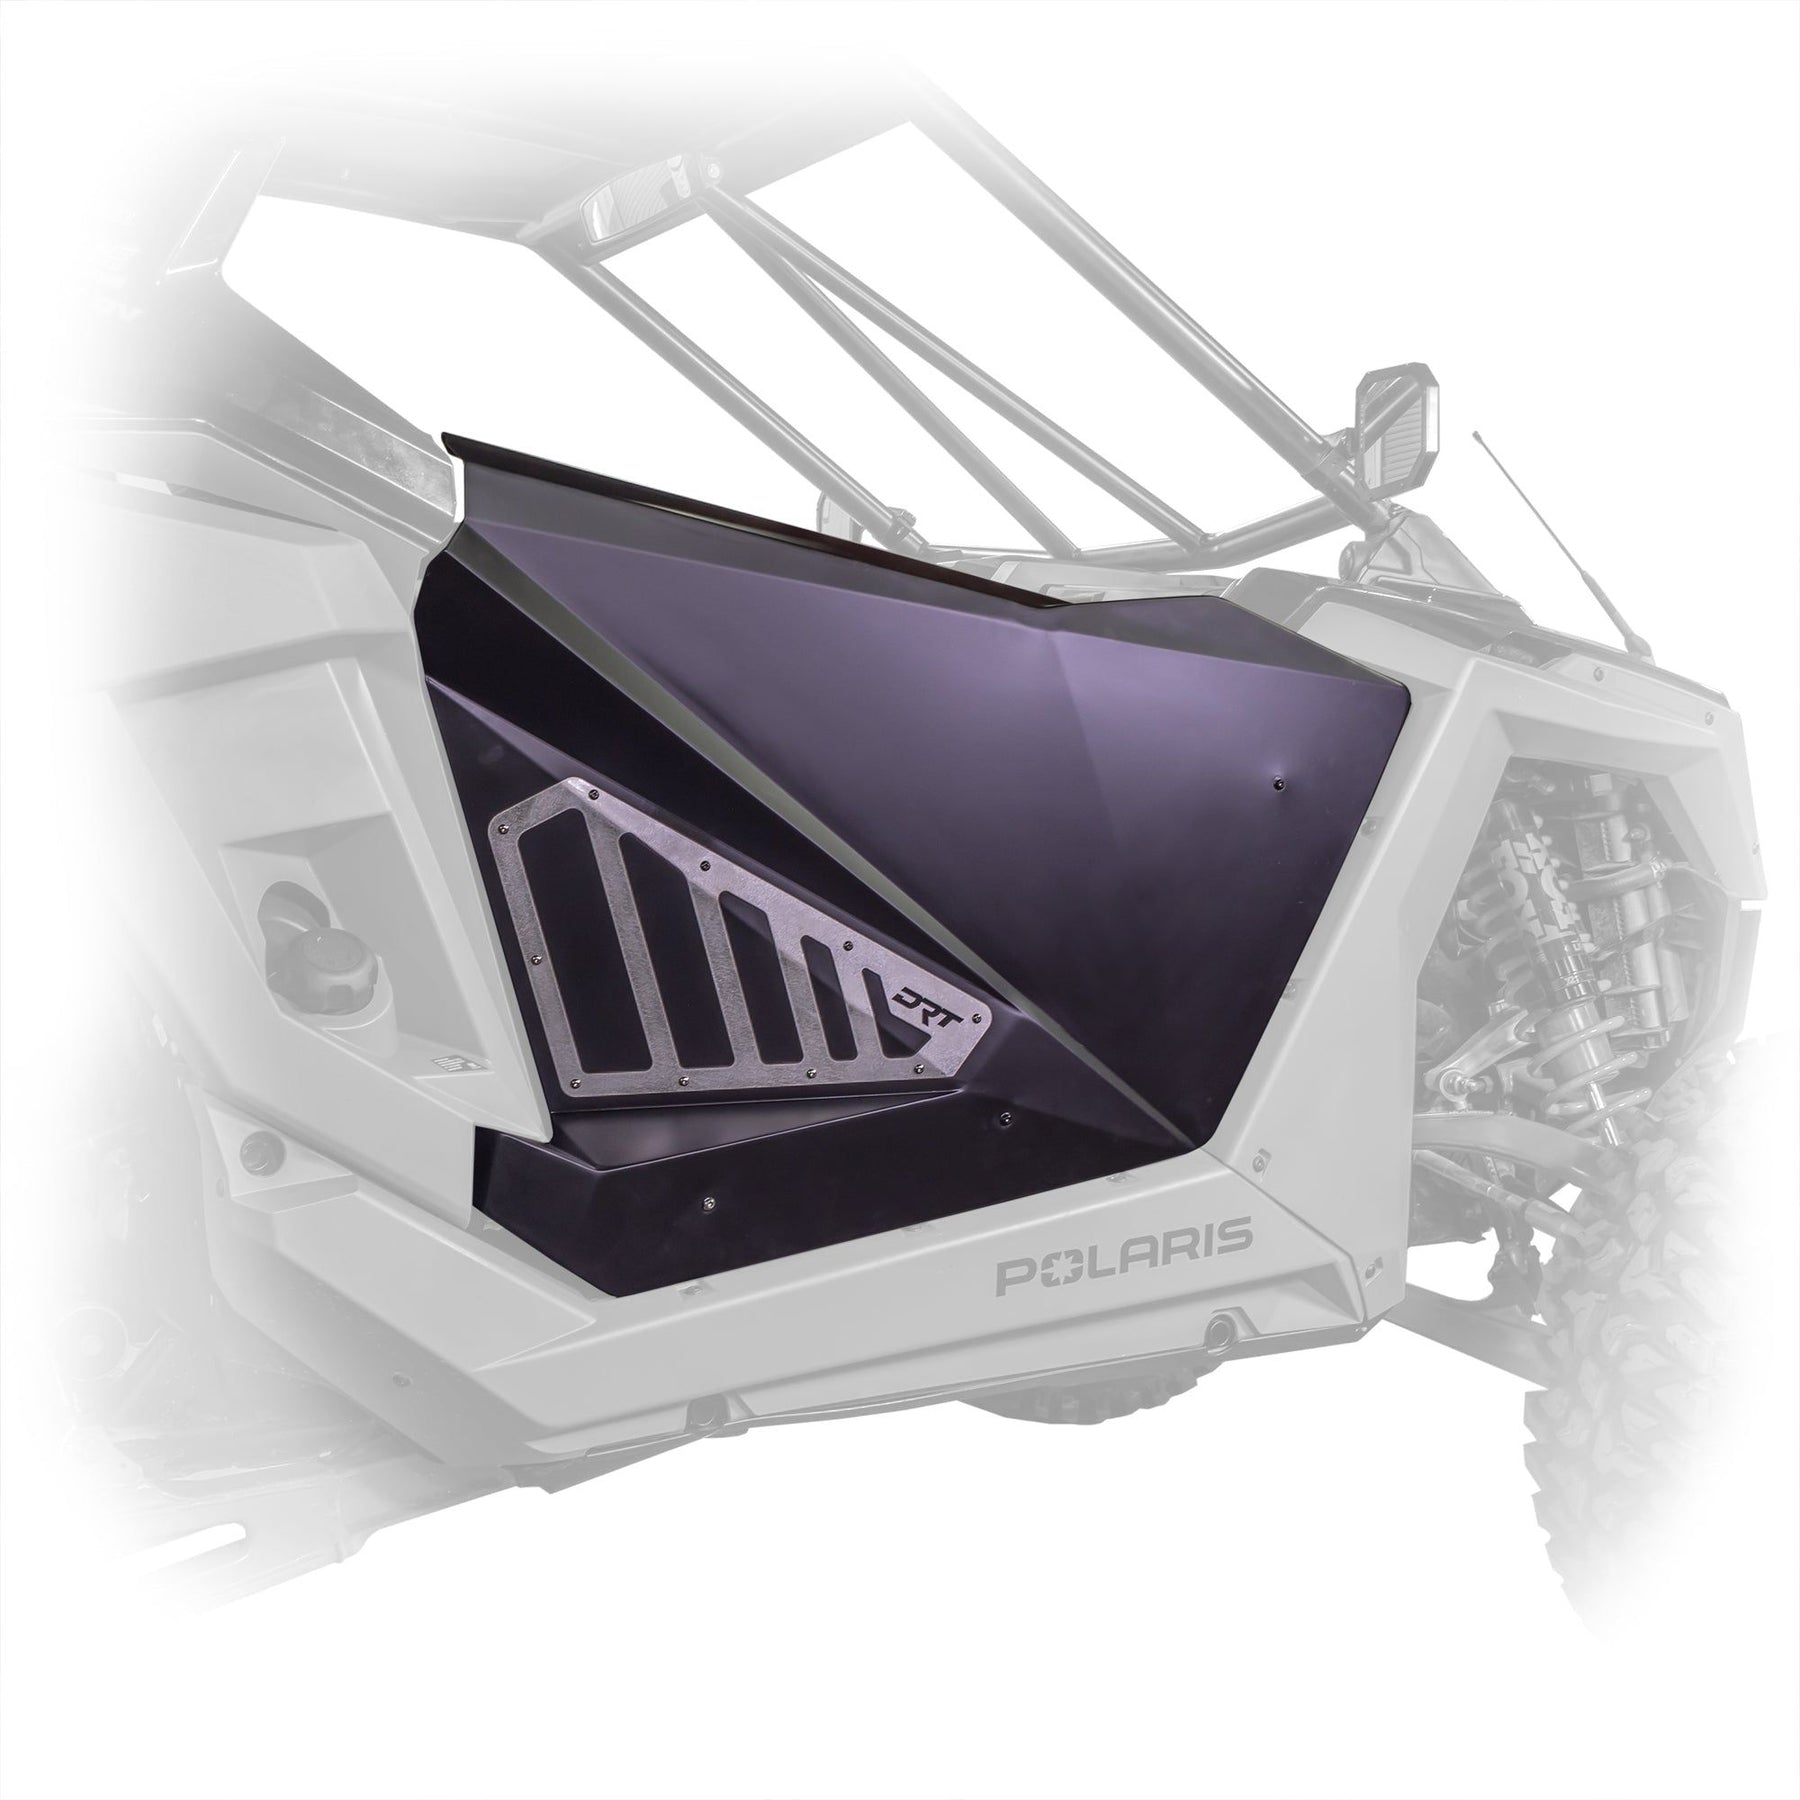 Polaris RZR Pro / Turbo R Aluminum Door Kit | DRT Motorsports